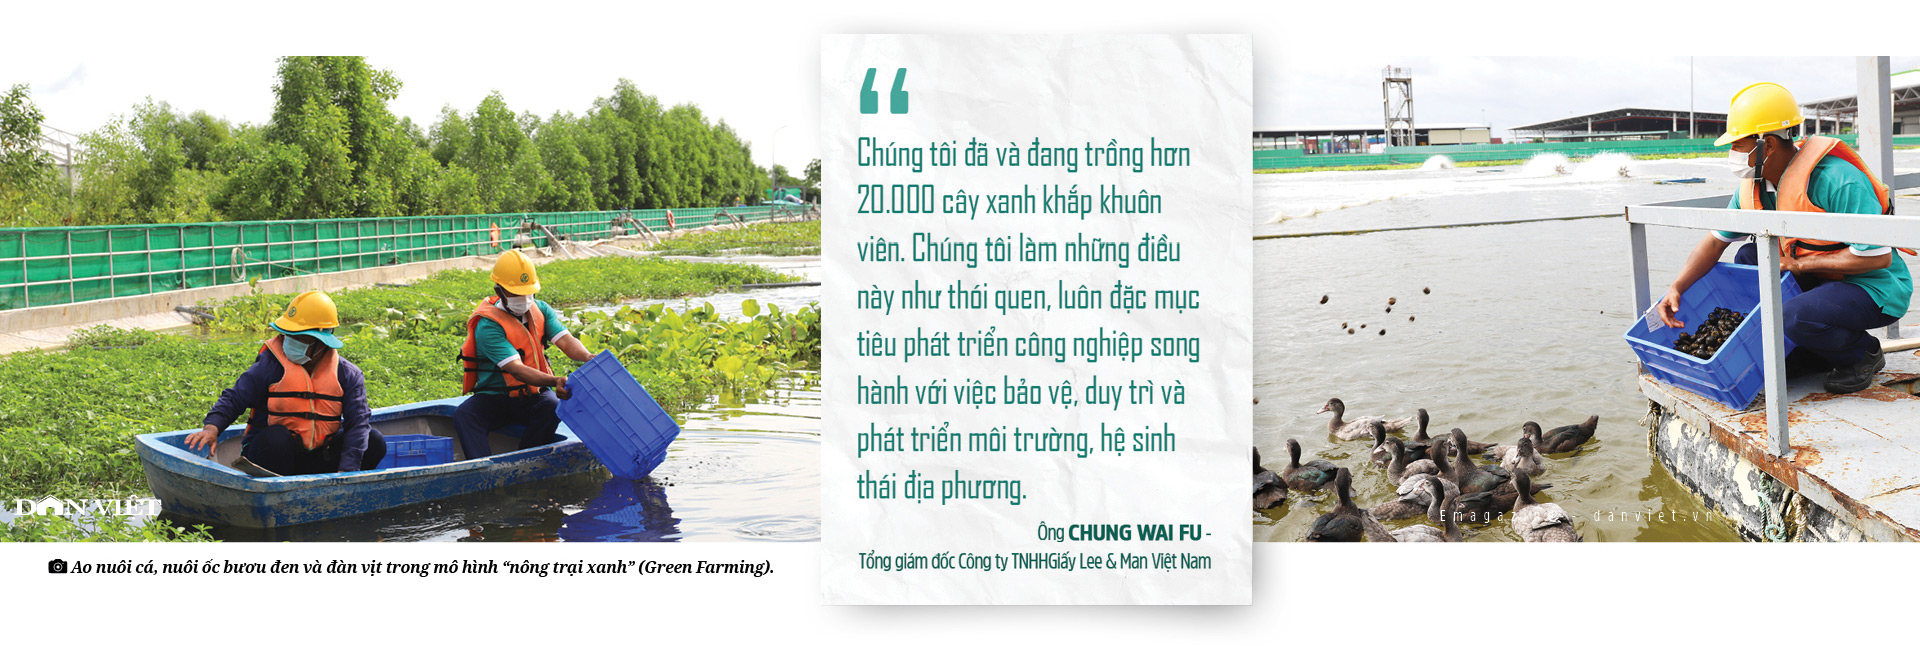 Công ty Giấy Lee & Man Việt Nam:  Mô hình “nông trại xanh” làm xanh hóa không gian công nghiệp   - Ảnh 5.